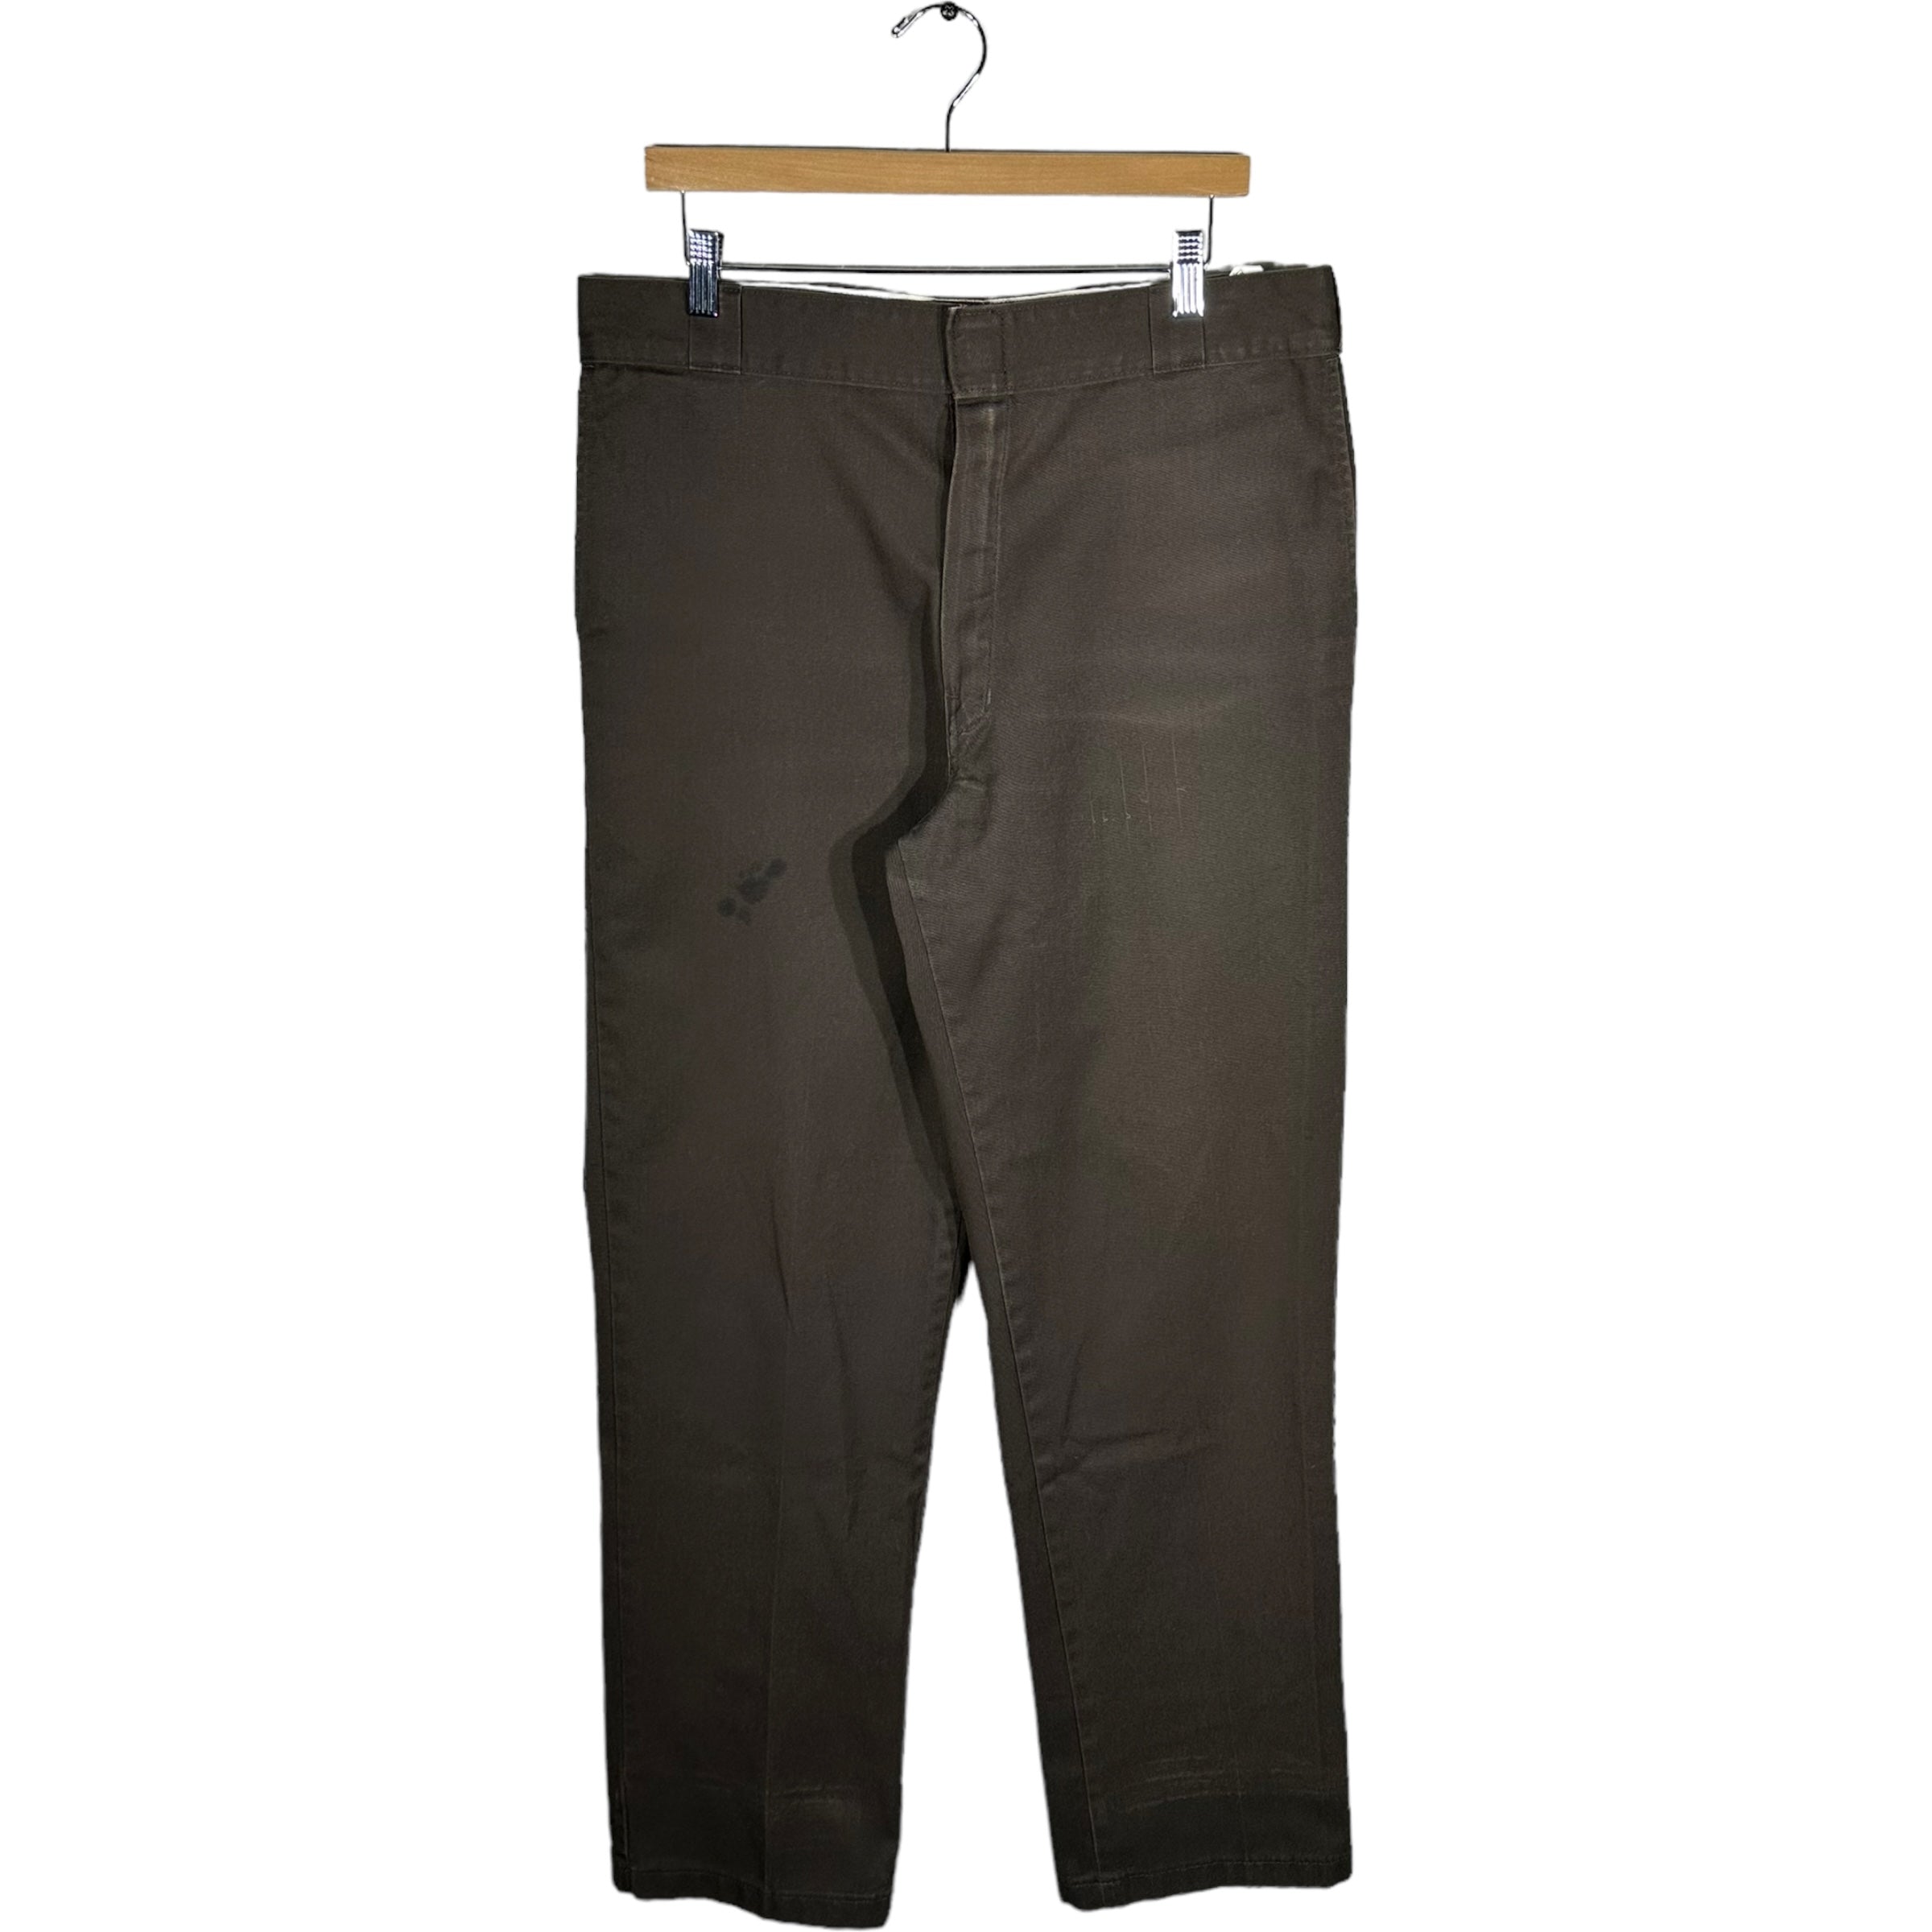 Vintage Dickies 974 Chino Pants